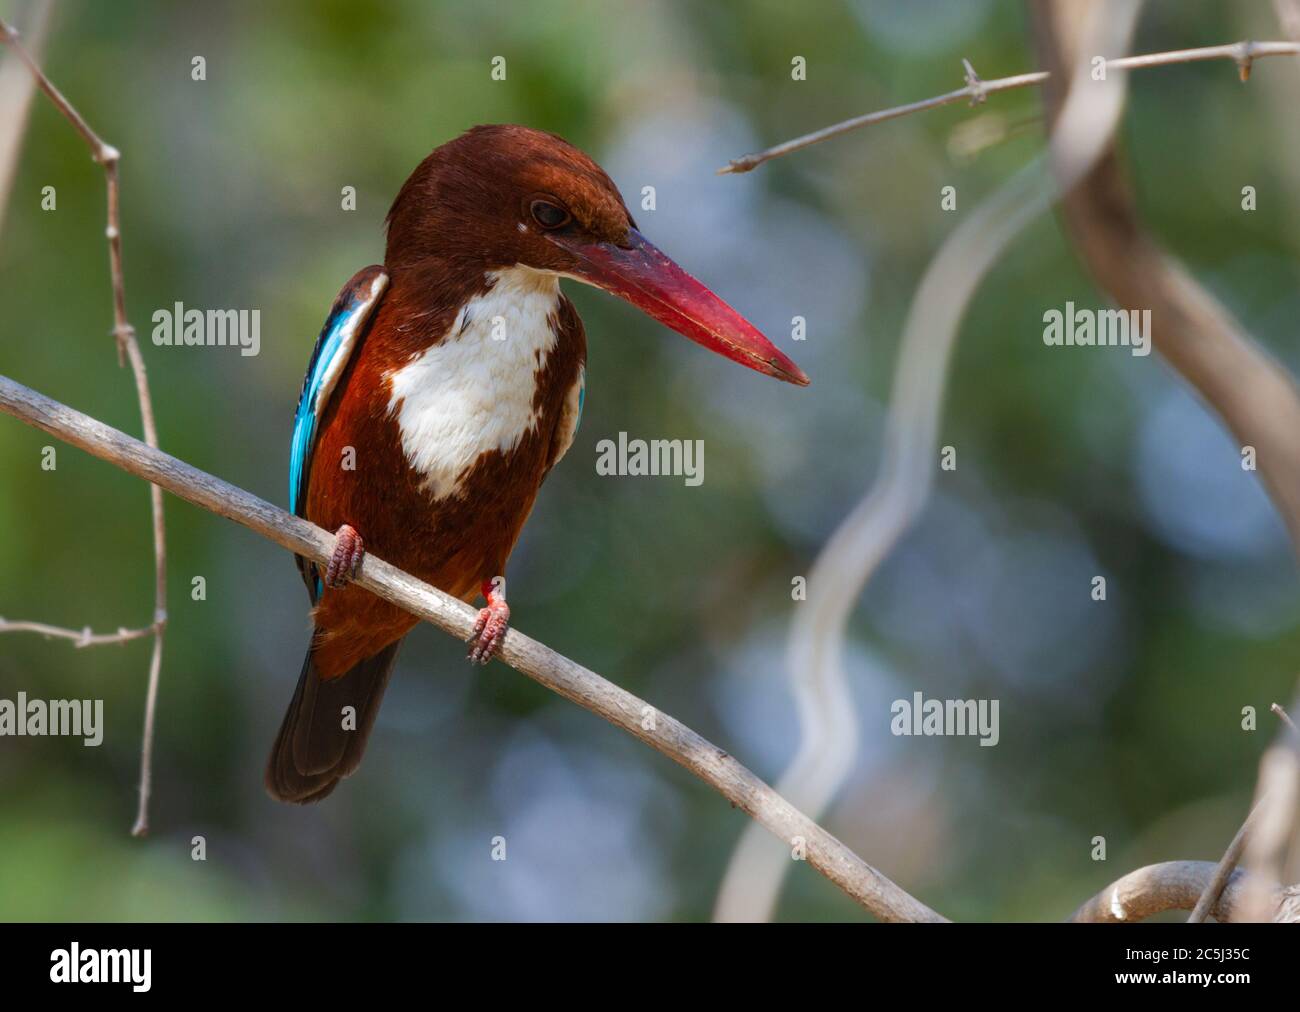 White-throated kingfisher or Halcyon smyrnensis near Pune Maharashtra India Stock Photo